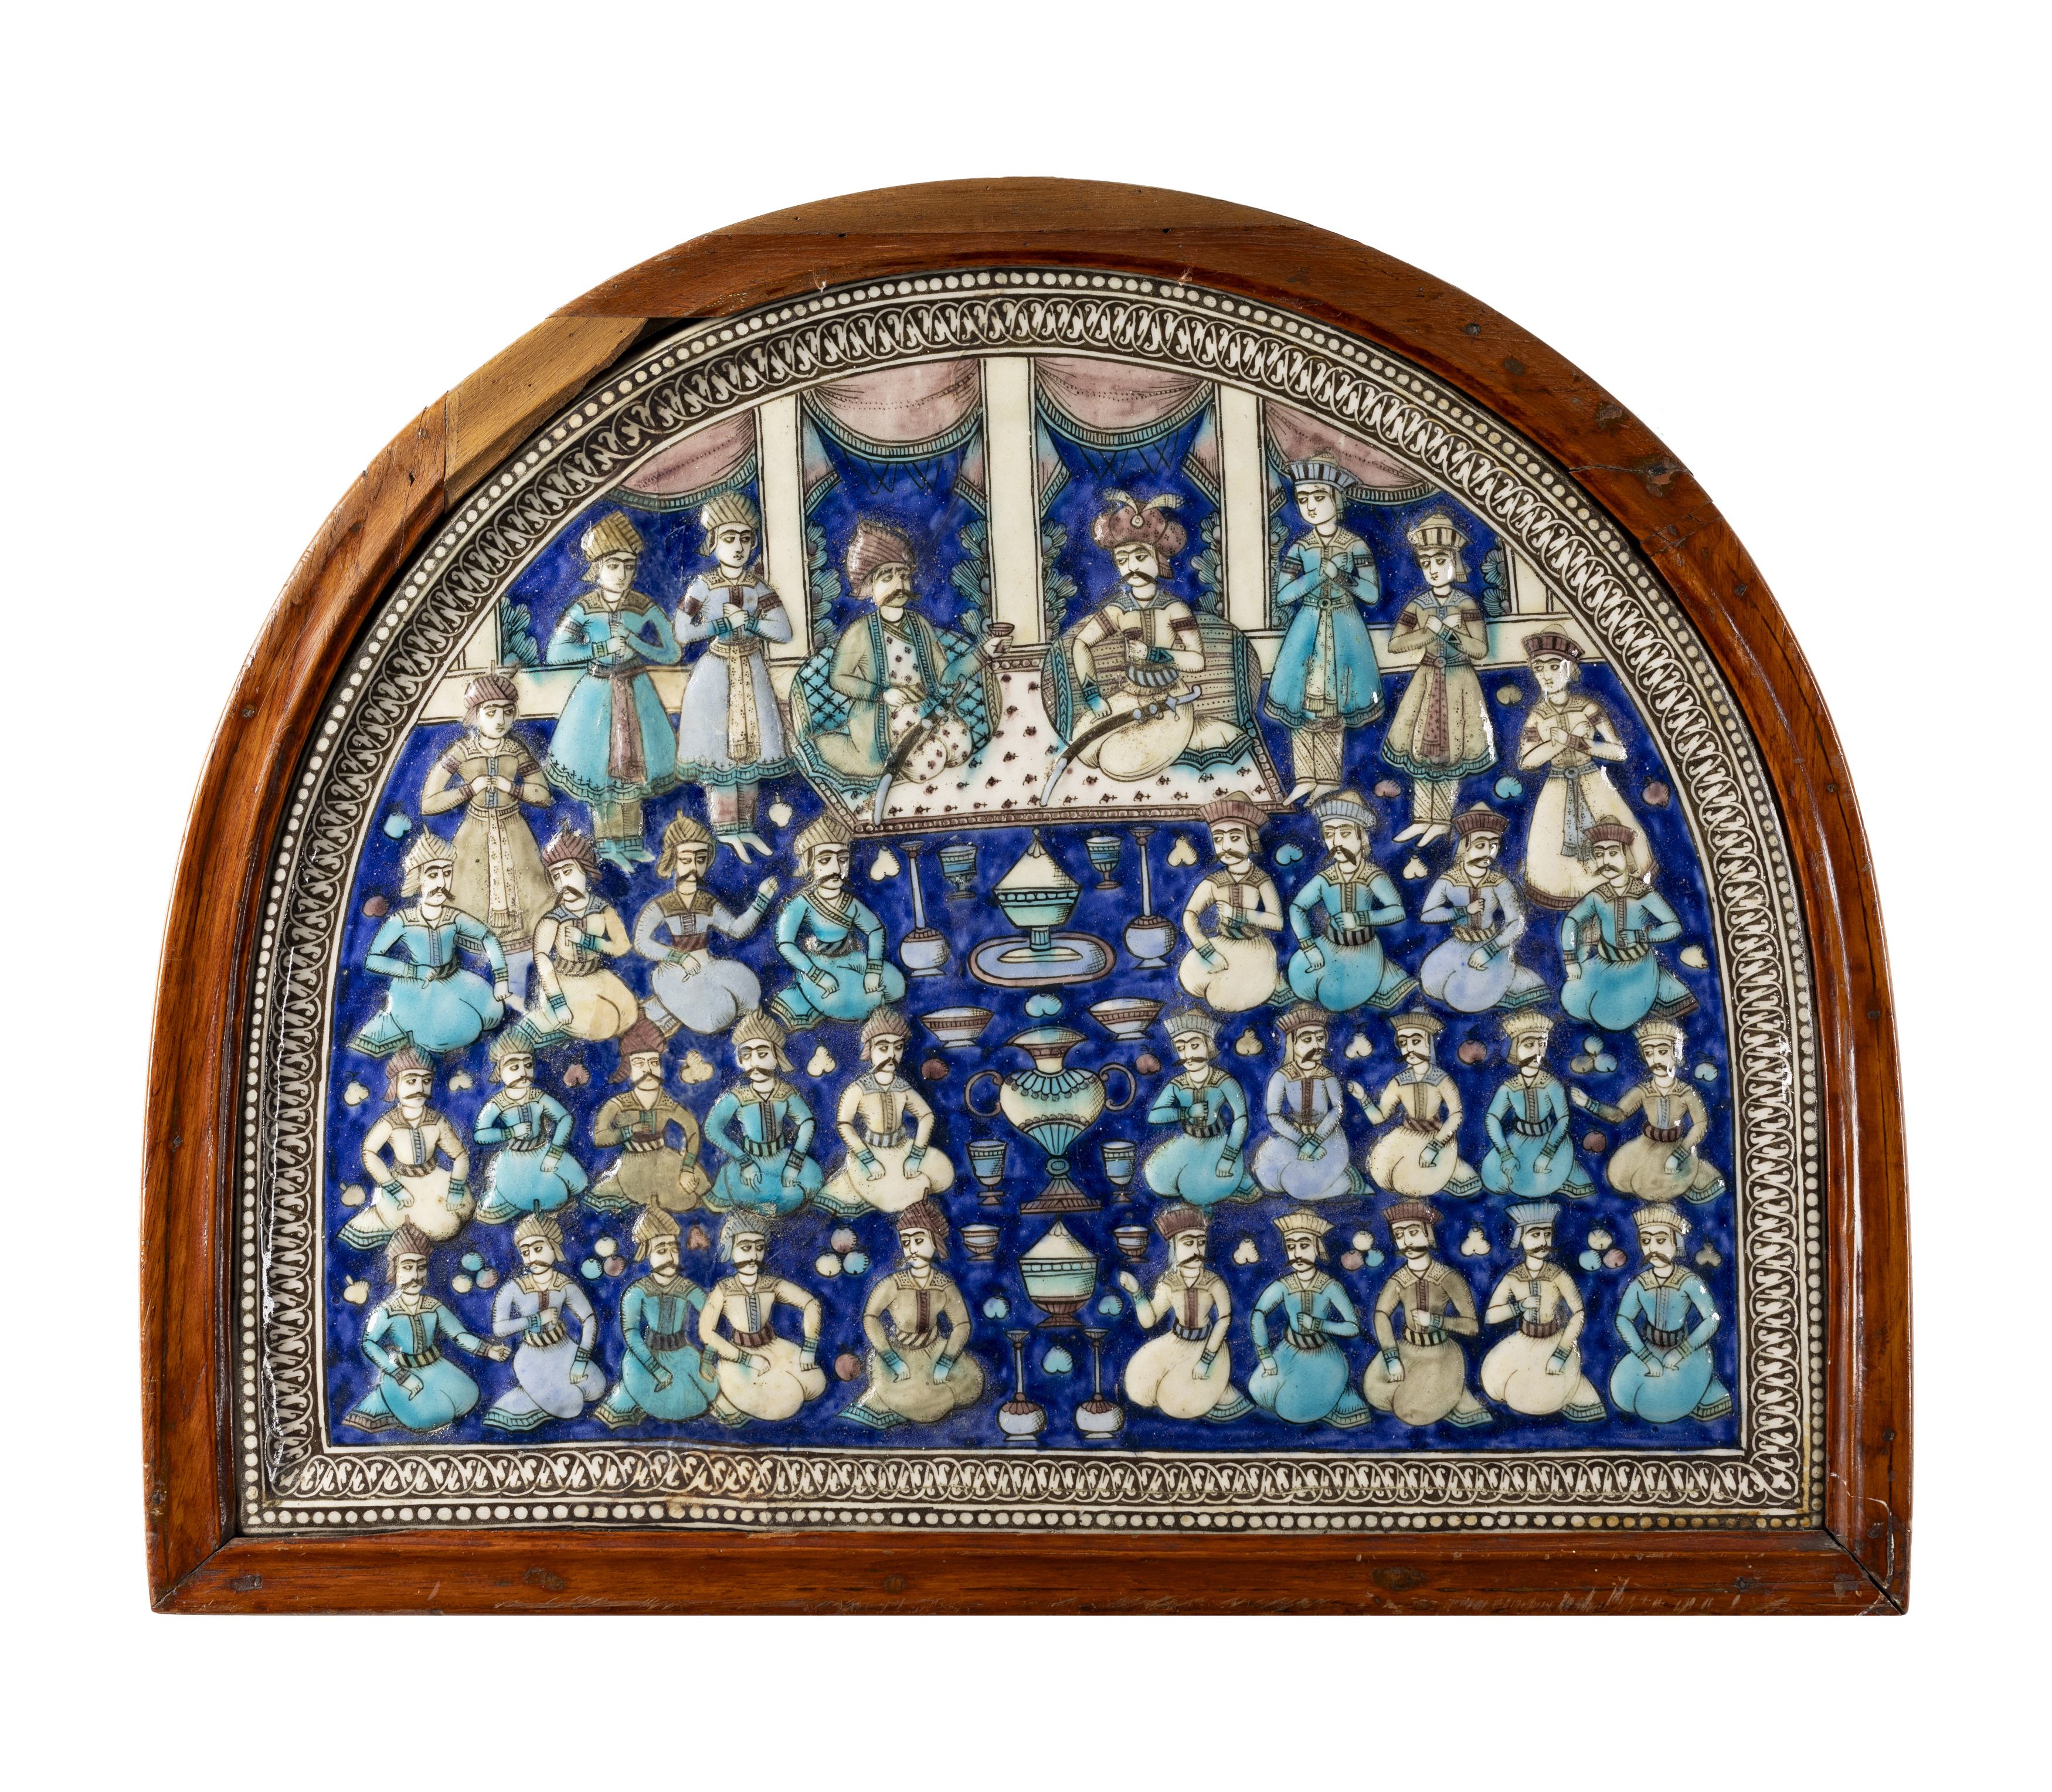 A large framed hemispherical moulded polychrome figural pottery tile, Tehran, Qajar Iran, c.1860,...